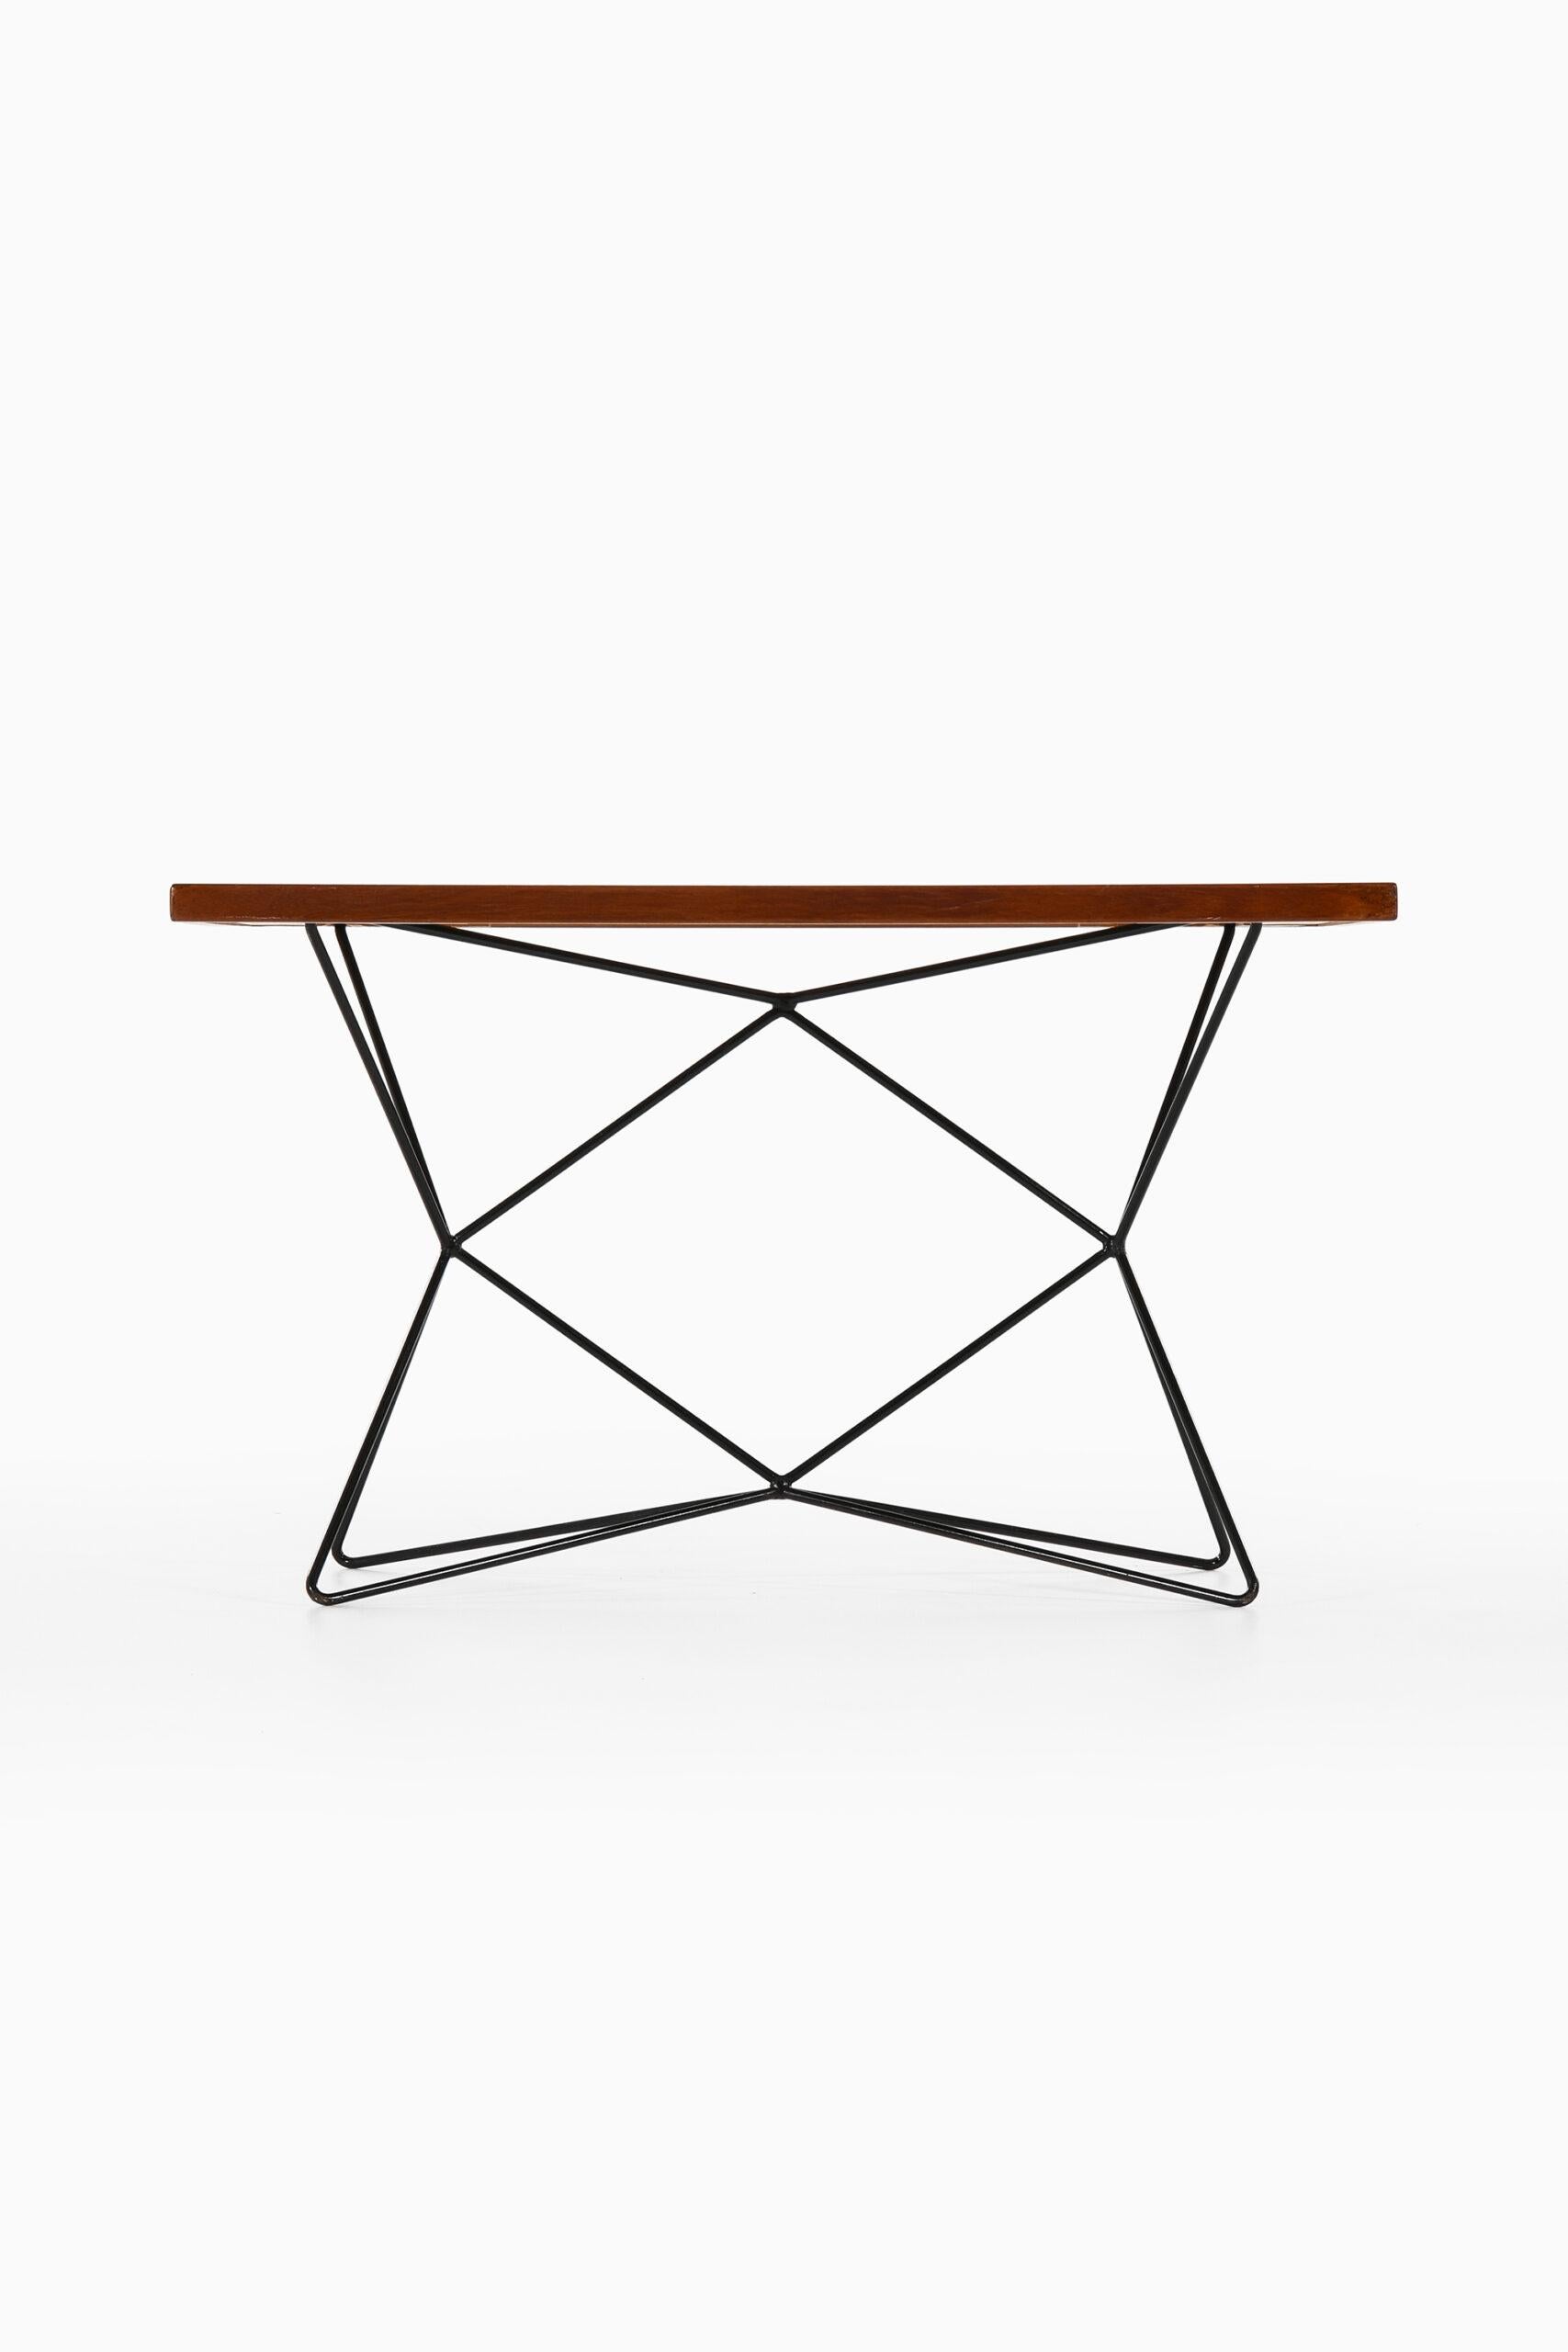 Rare table modèle A2 conçue par Bengt Johan Gullberg. Produit par Gullberg Trading Company en Suède.
Peut être transformée en table de café, de salle à manger ou de bar.
Dimensions (L x P x H) : 120 x 75 x 51,5 / 71,5 / 97 cm.